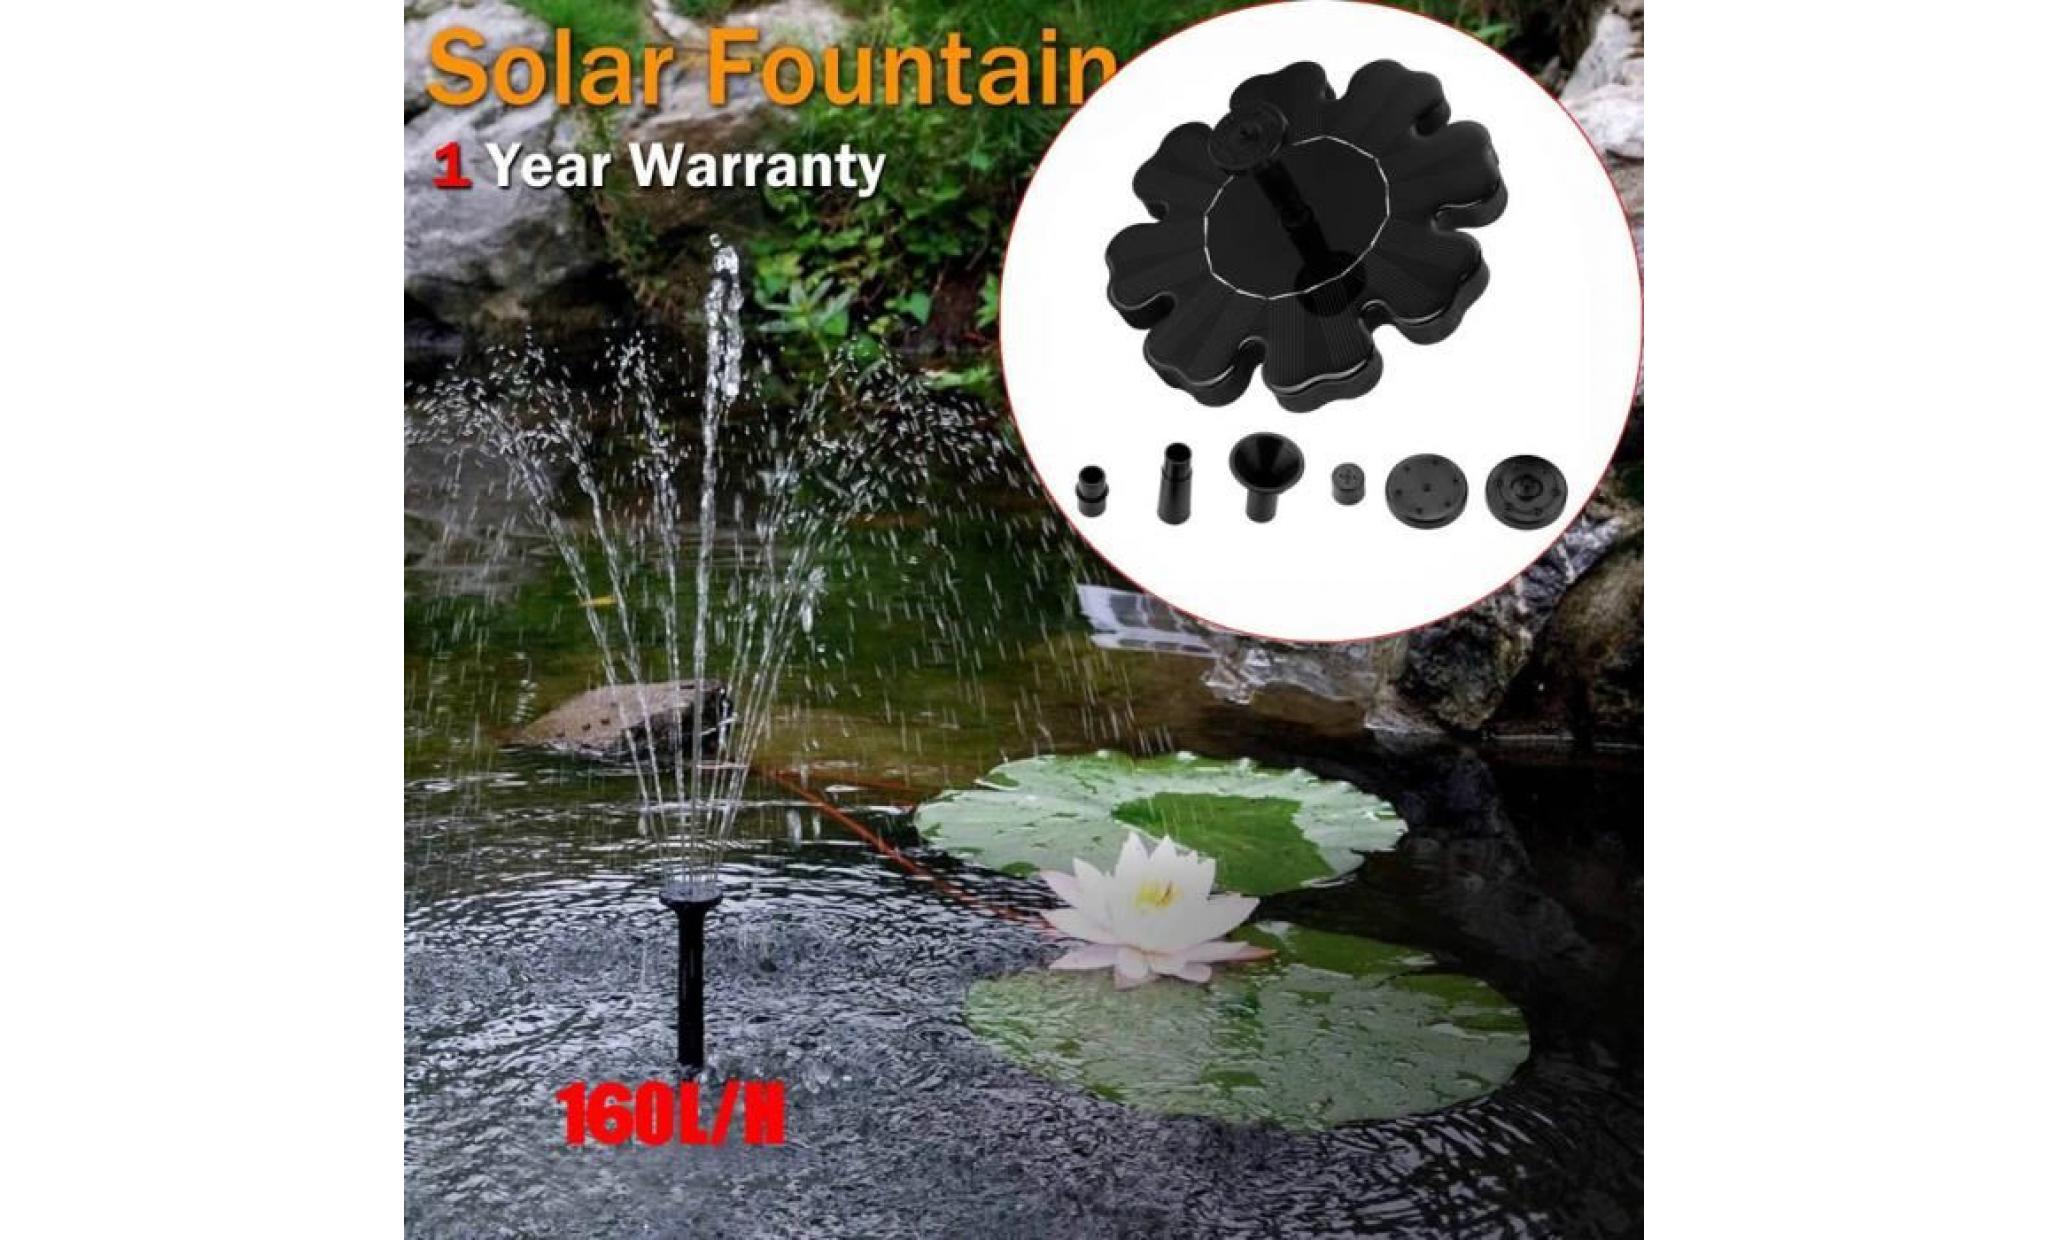 poi@ extérieur à énergie solaire oiseaux bain d'eau fontaine pompe pour piscine, jardin, aquarium noir_28